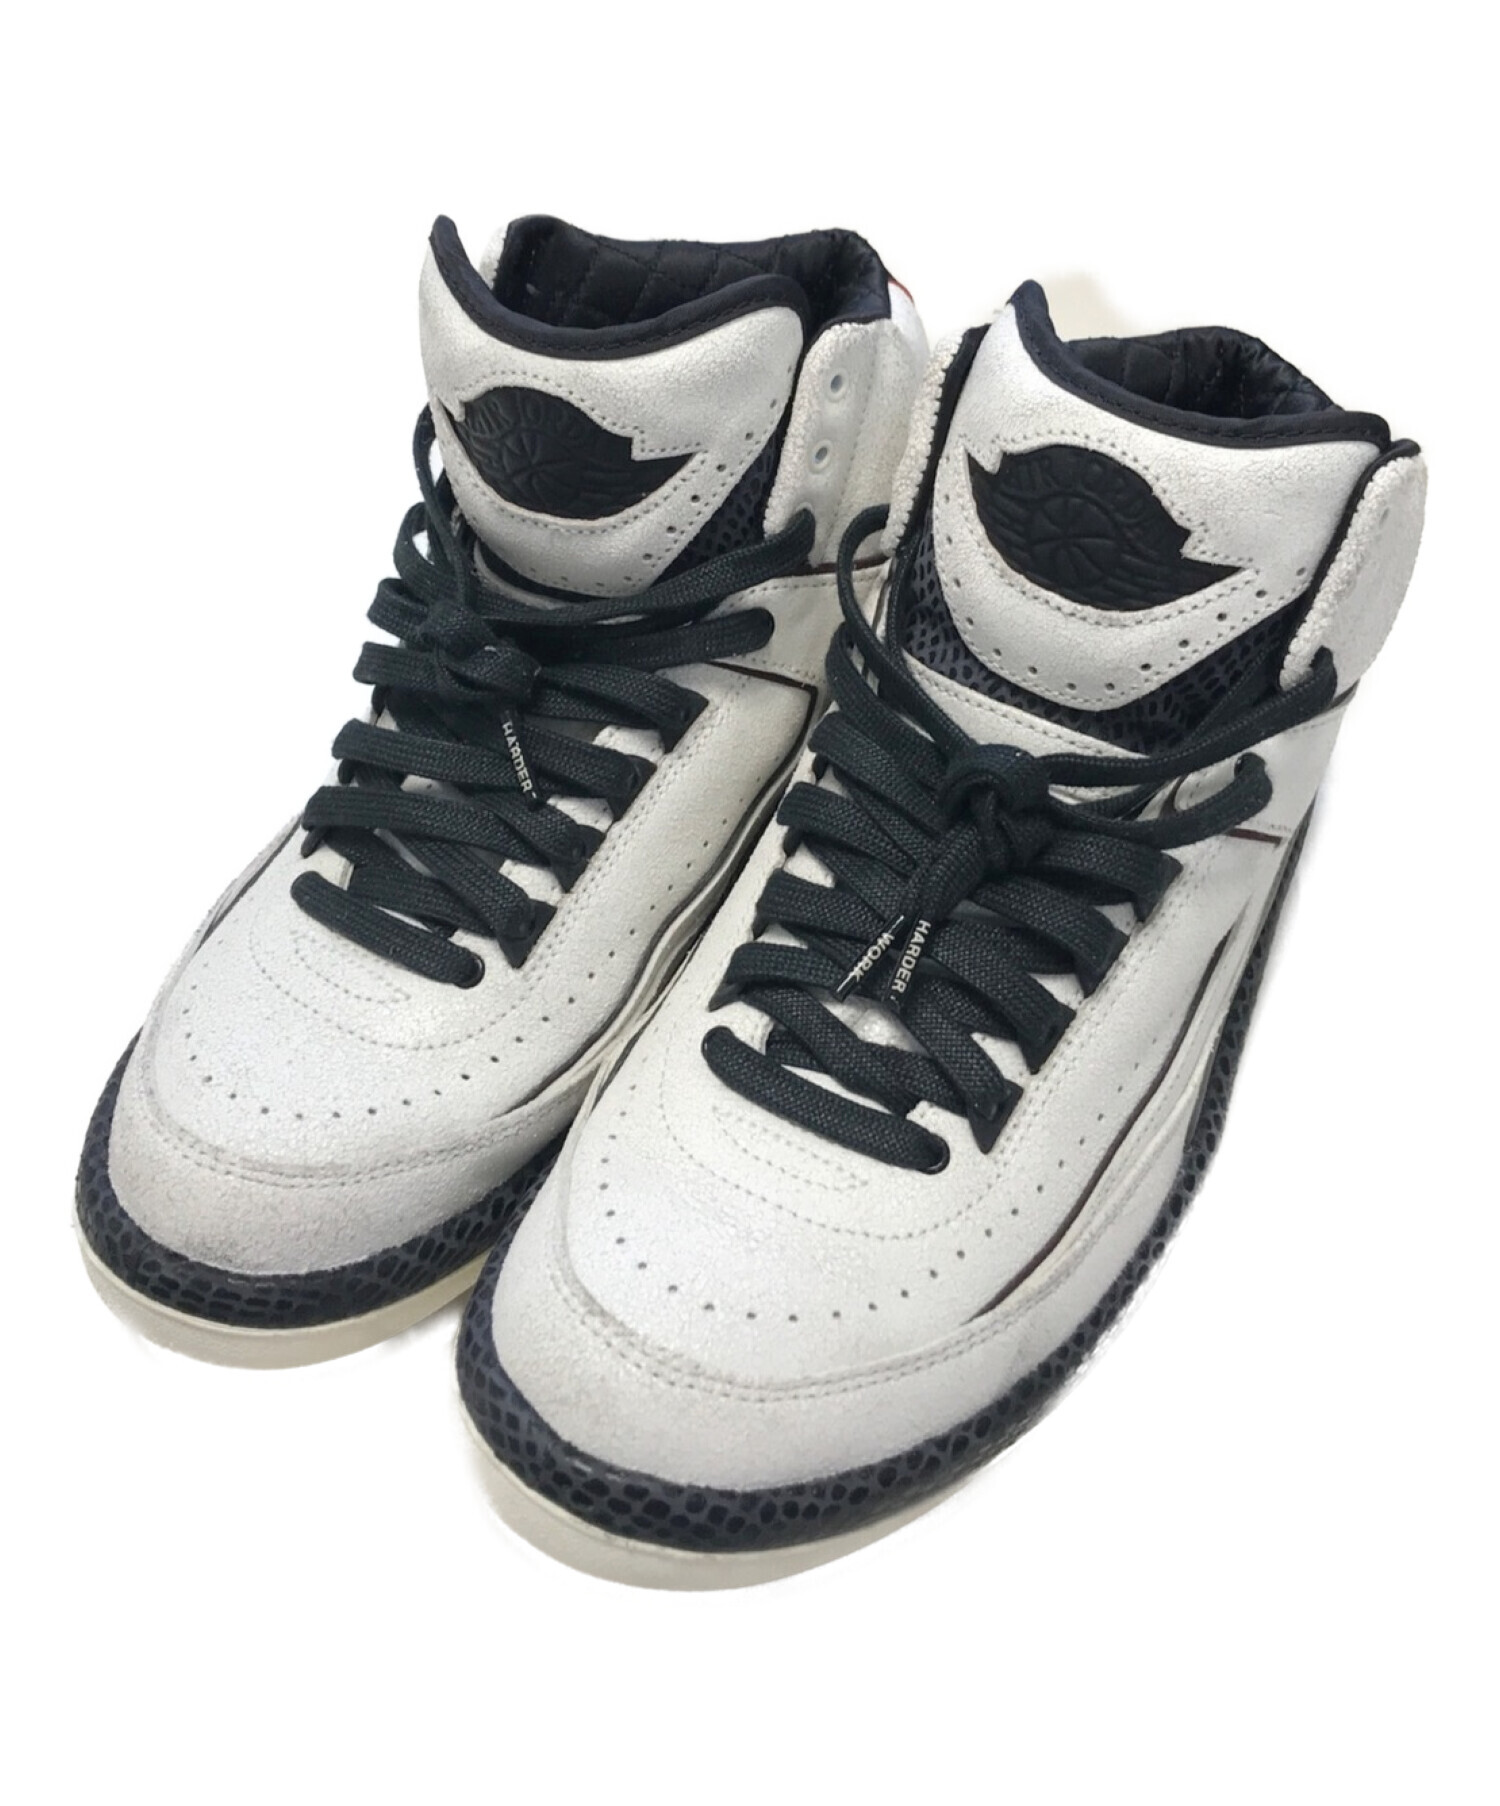 即発送(27.5cm)A Ma Manire x Nike Air Jordan 4 靴